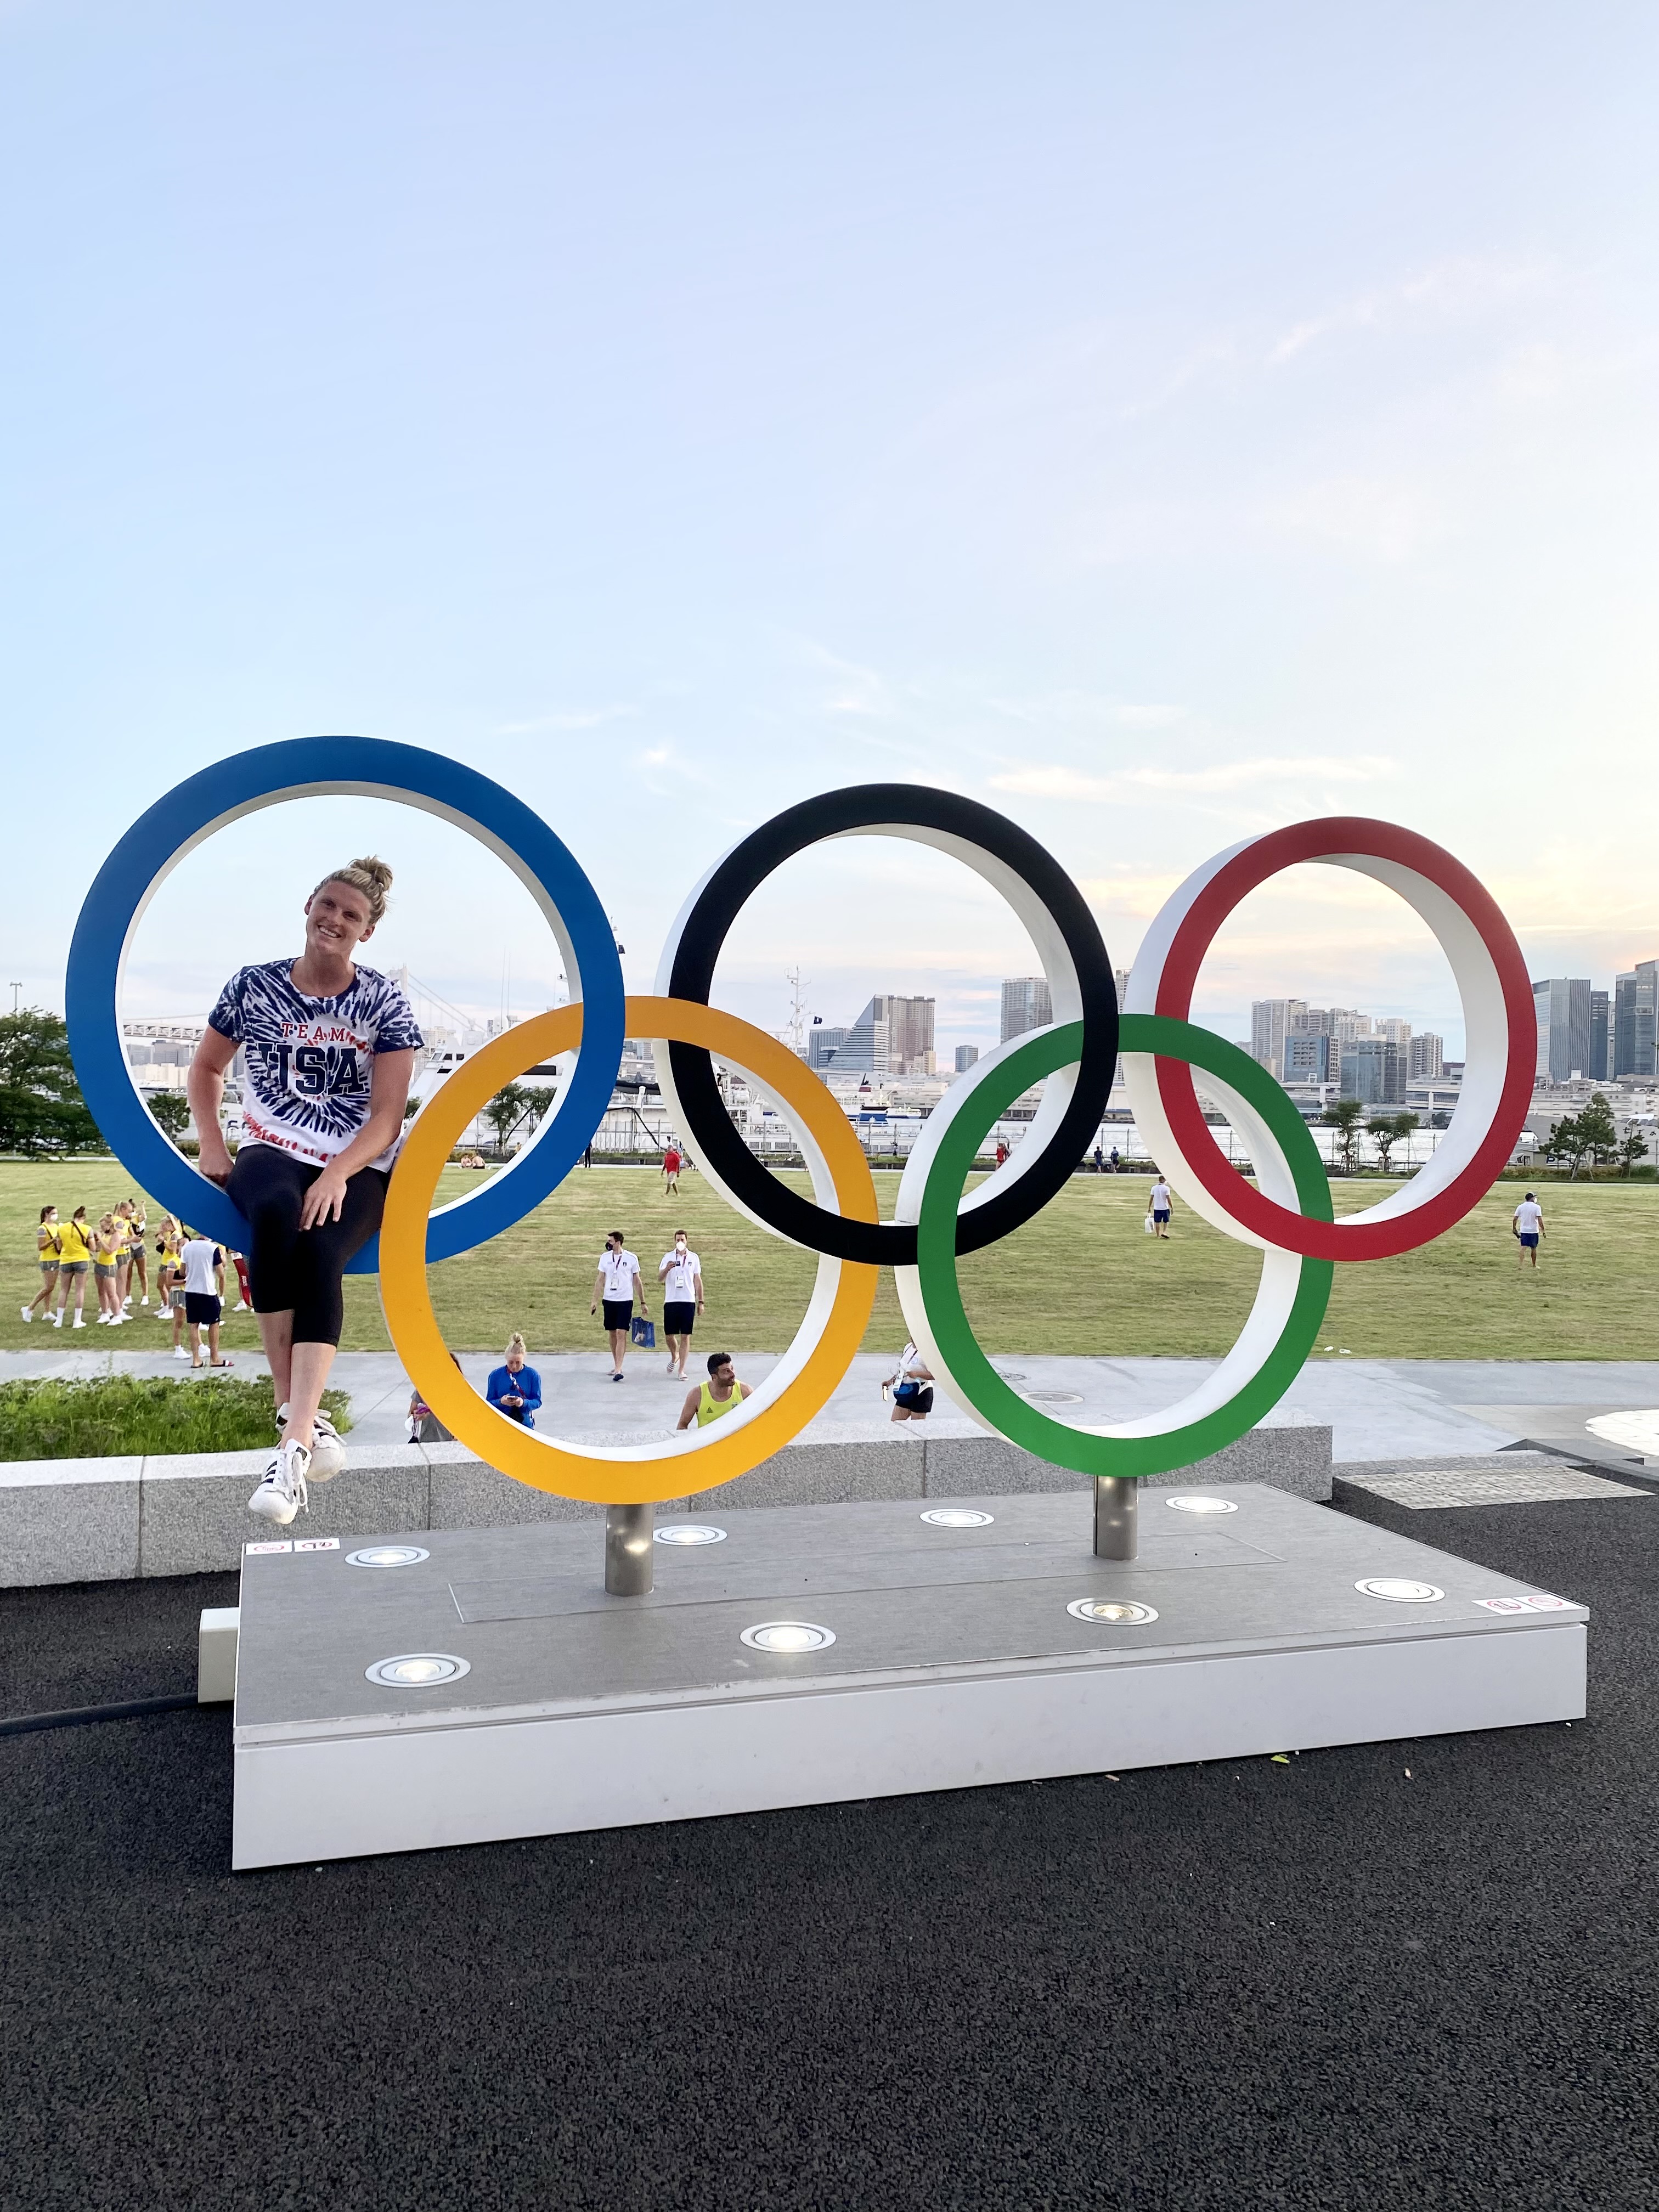 Amanda posing in the Olympic rings